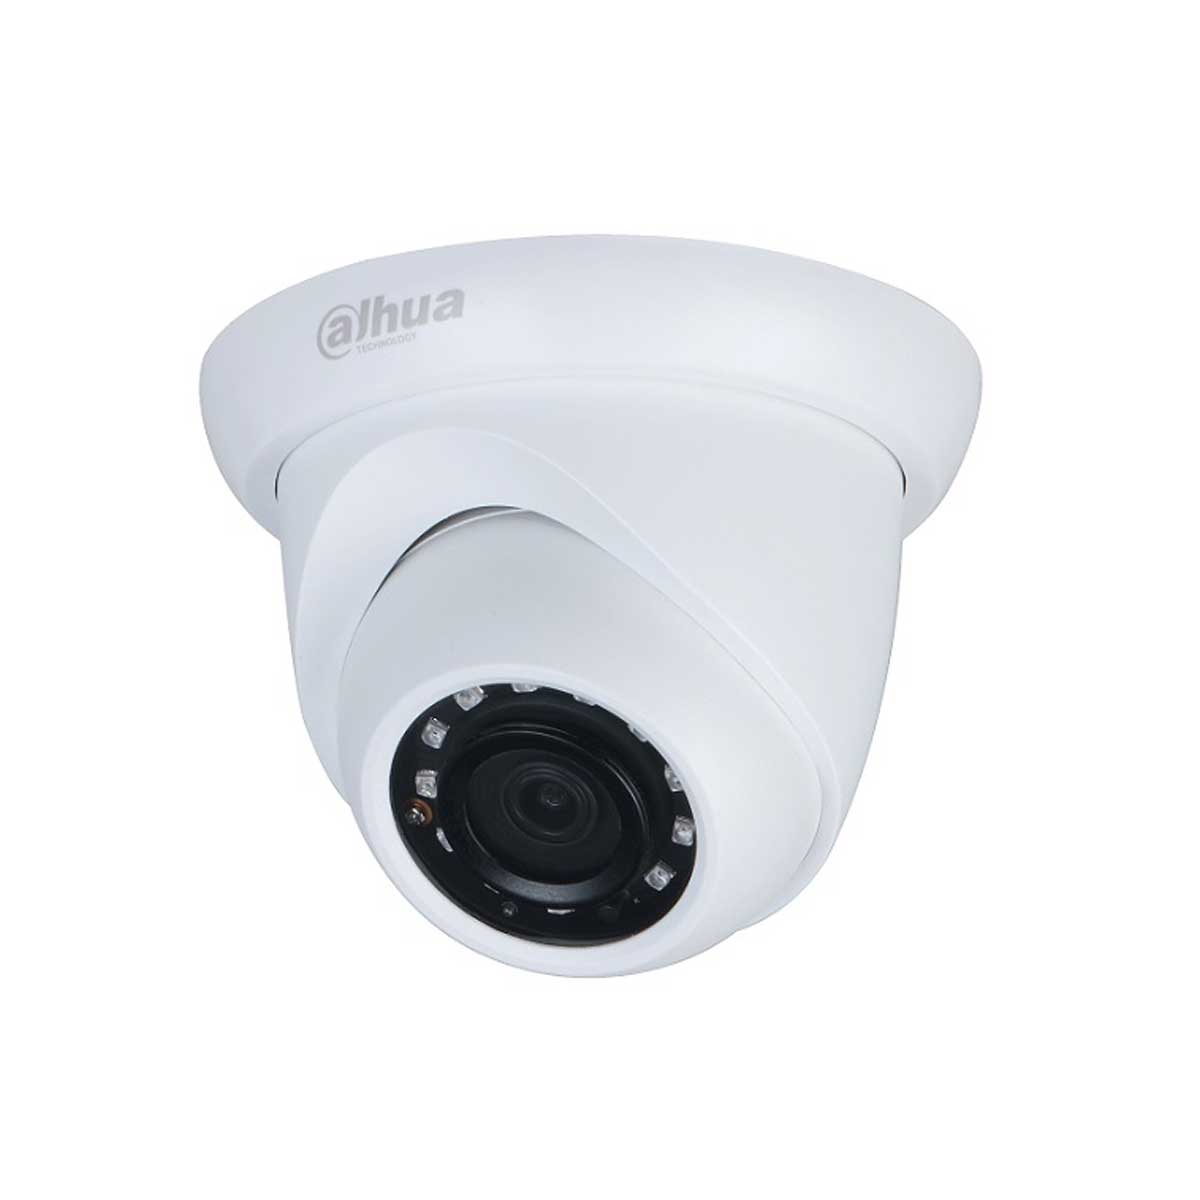  Camera IP Dahua DH-IPC-HDW1230S-S5 2MP, hồng ngoại 30m 